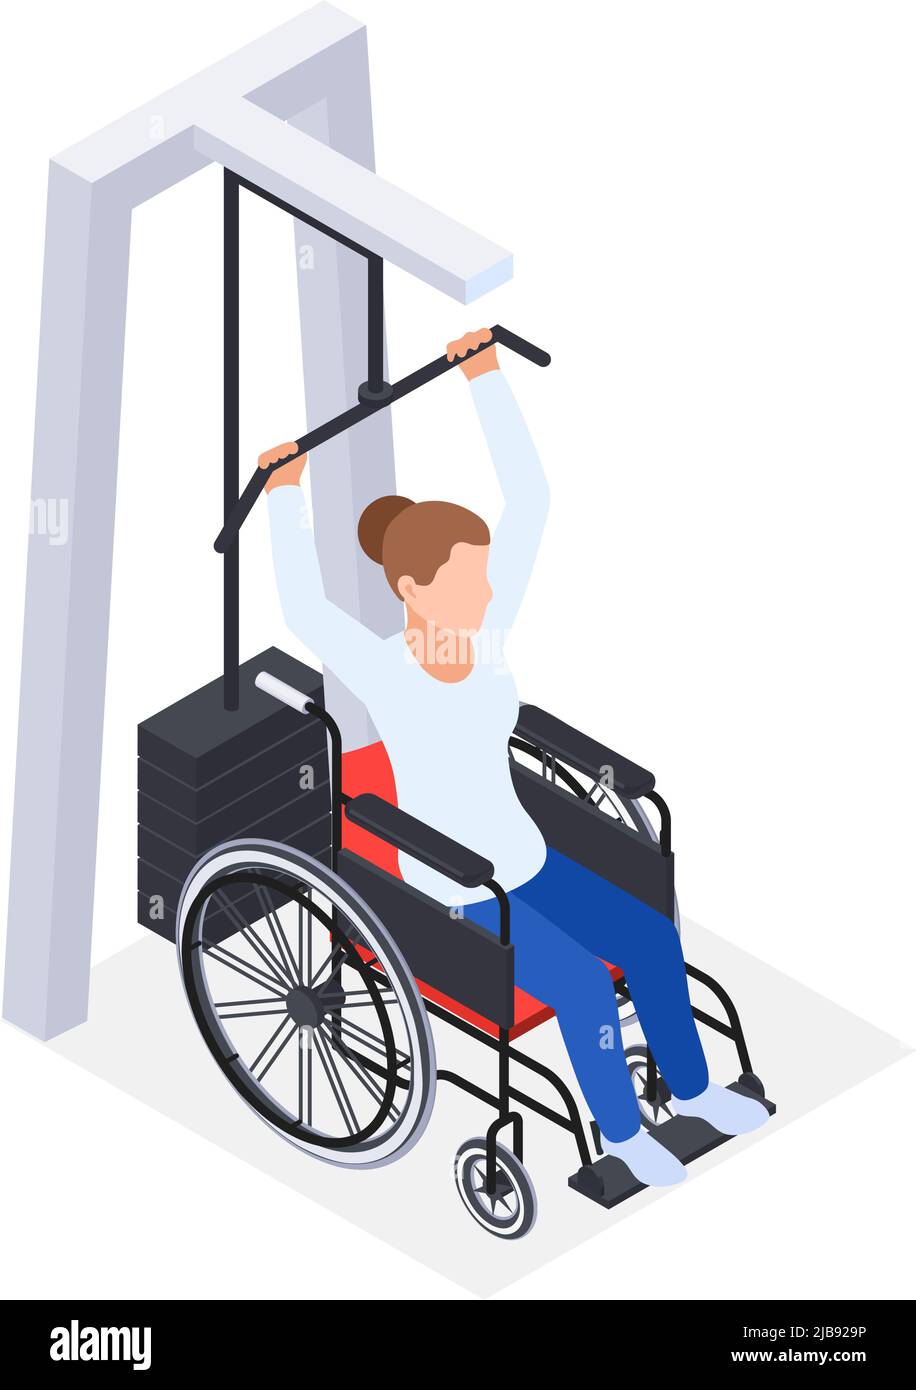 Physiotherapie Rehabilitation isometrische Zusammensetzung mit Frau im Rollstuhl Gewichtheben Vektor Illustration Stock Vektor